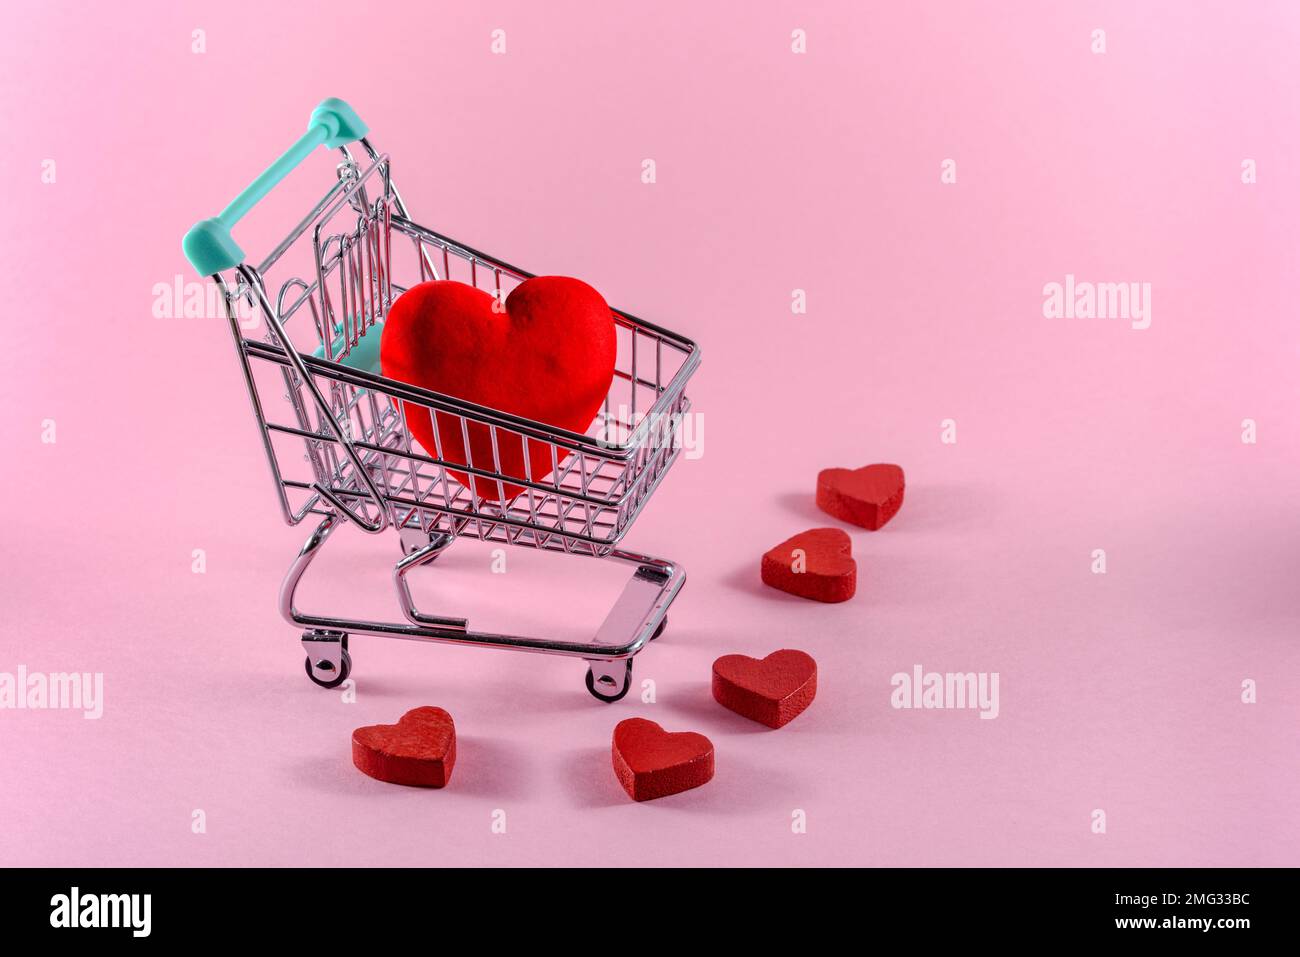 Rotes Herz in einem kleinen Einkaufswagen auf hellrosa Hintergrund. Valentinstag-Shopping-Konzept. Speicherplatz kopieren. Stockfoto